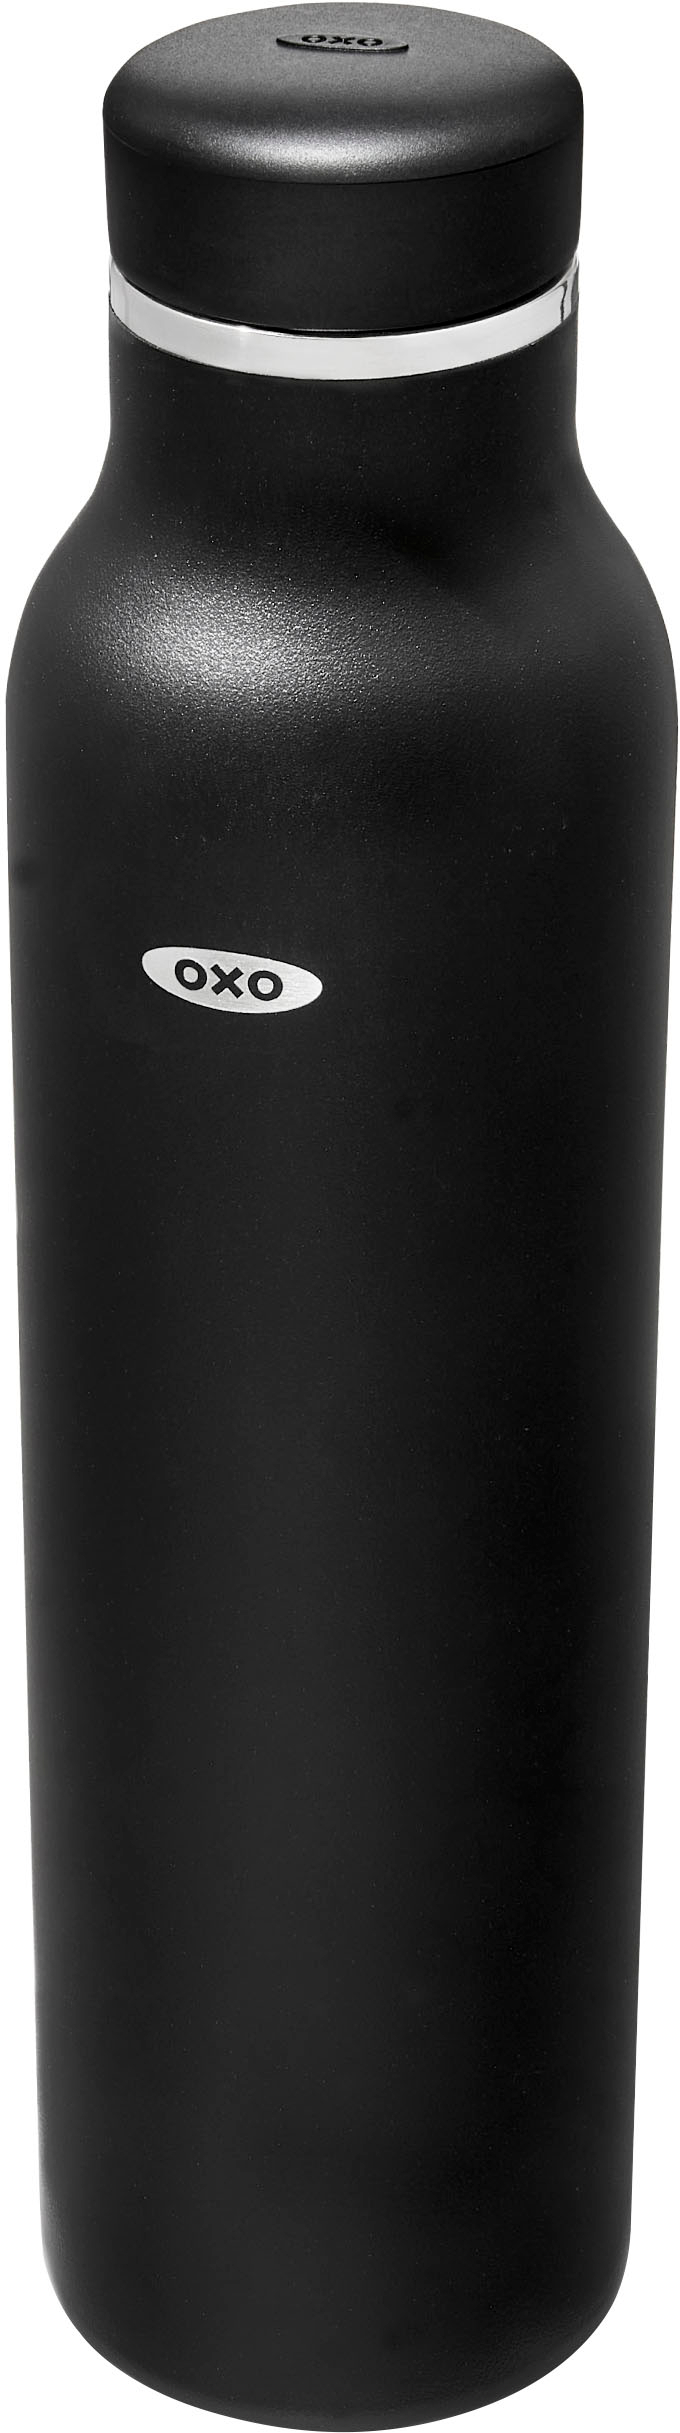 Best Buy: OXO Good Grips 24-Oz. Water Bottle Clear 1103881